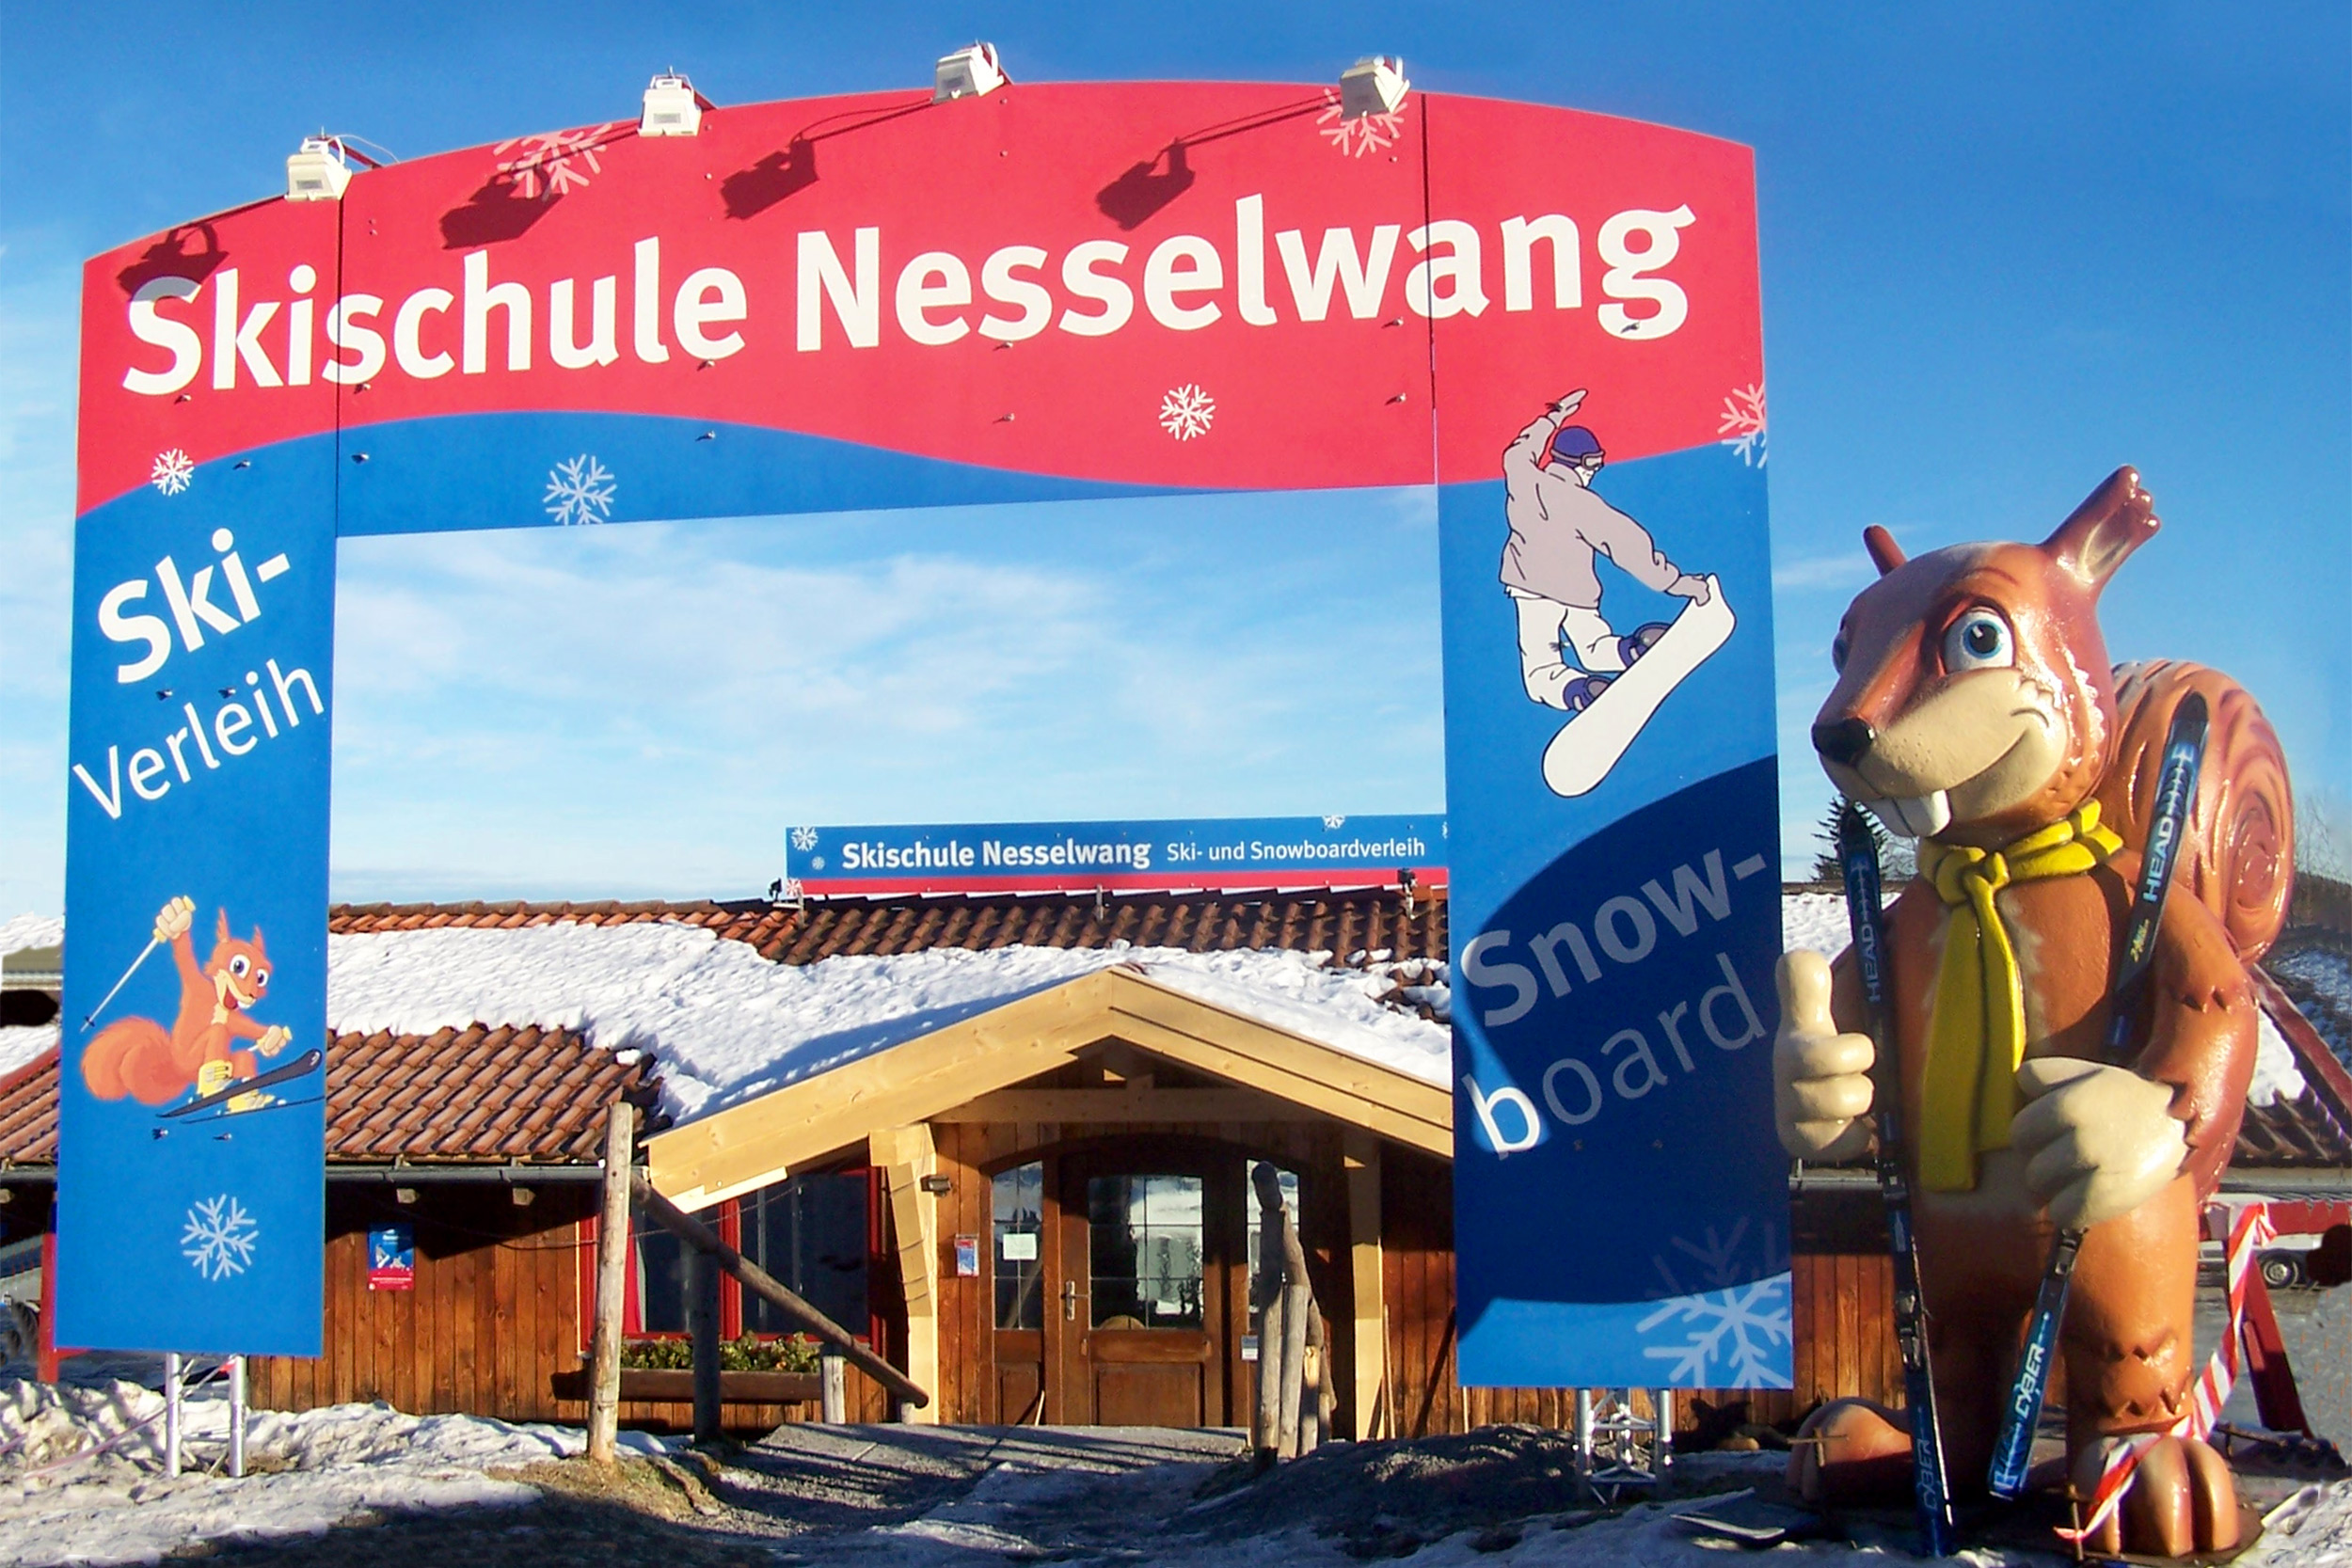 Skischule Nesselwang, Verleih von Skiausrüstungen, Snowboard und mehr